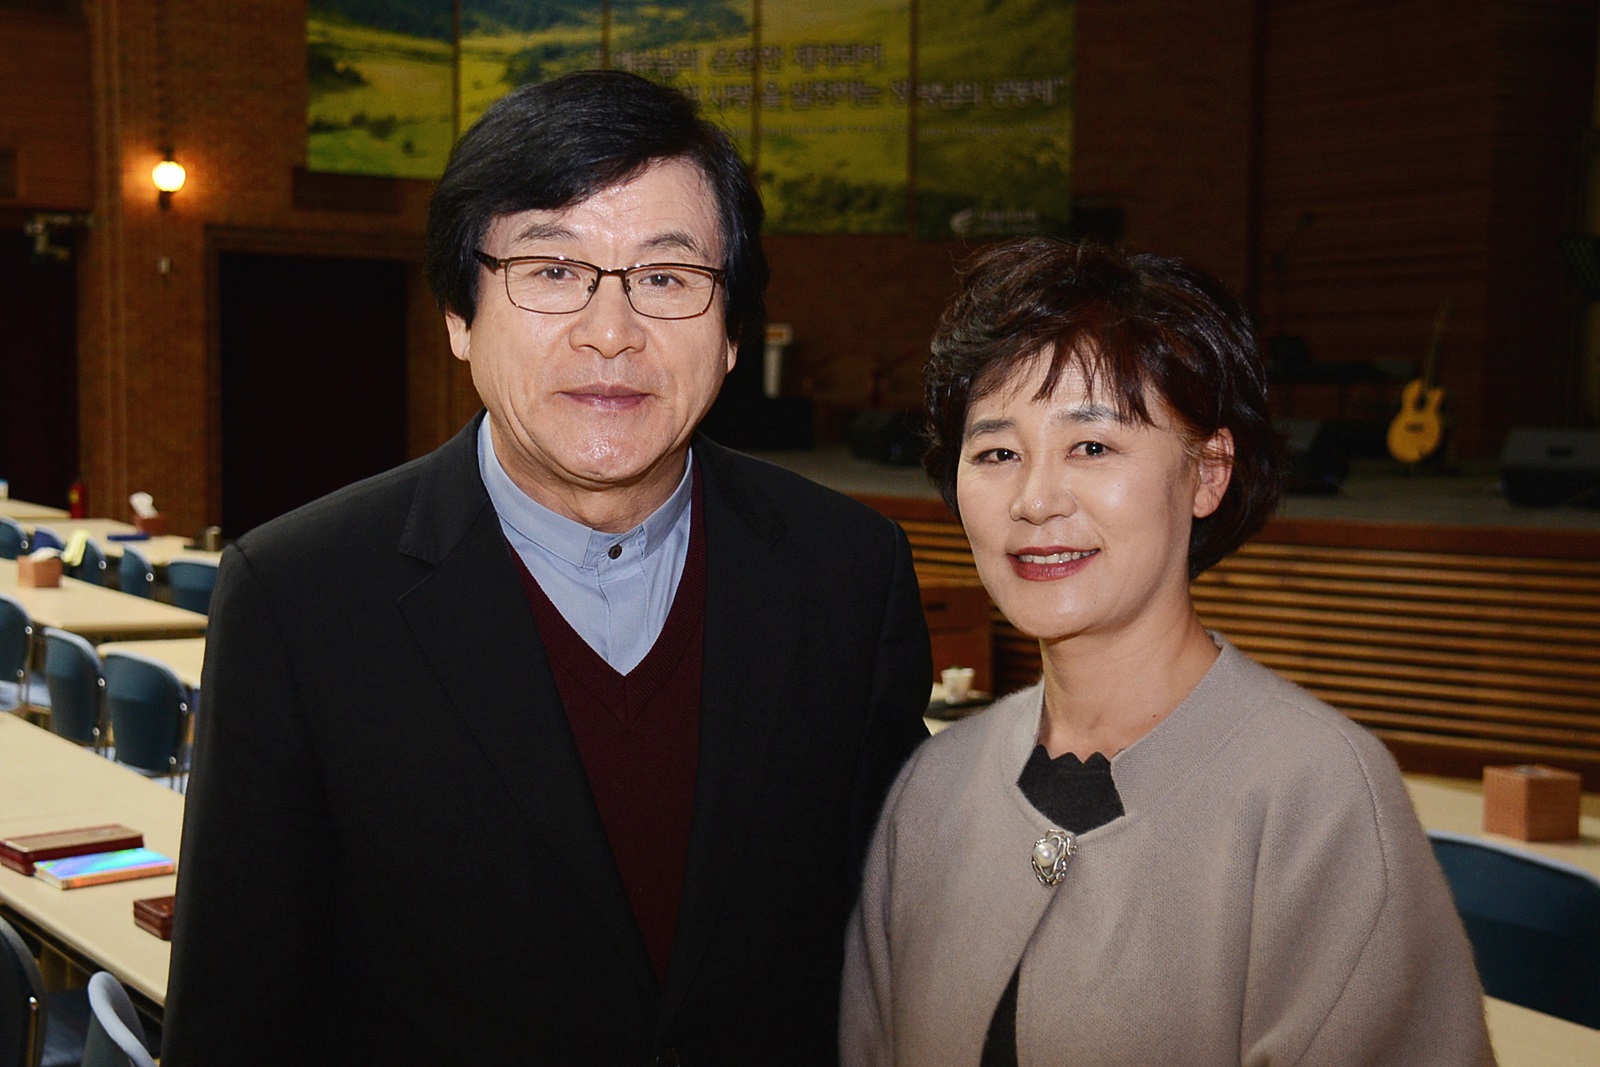 ▲ ㈔내적치유사역연구원 대표 주서택 목사(왼쪽)와 김선화 사모 부부